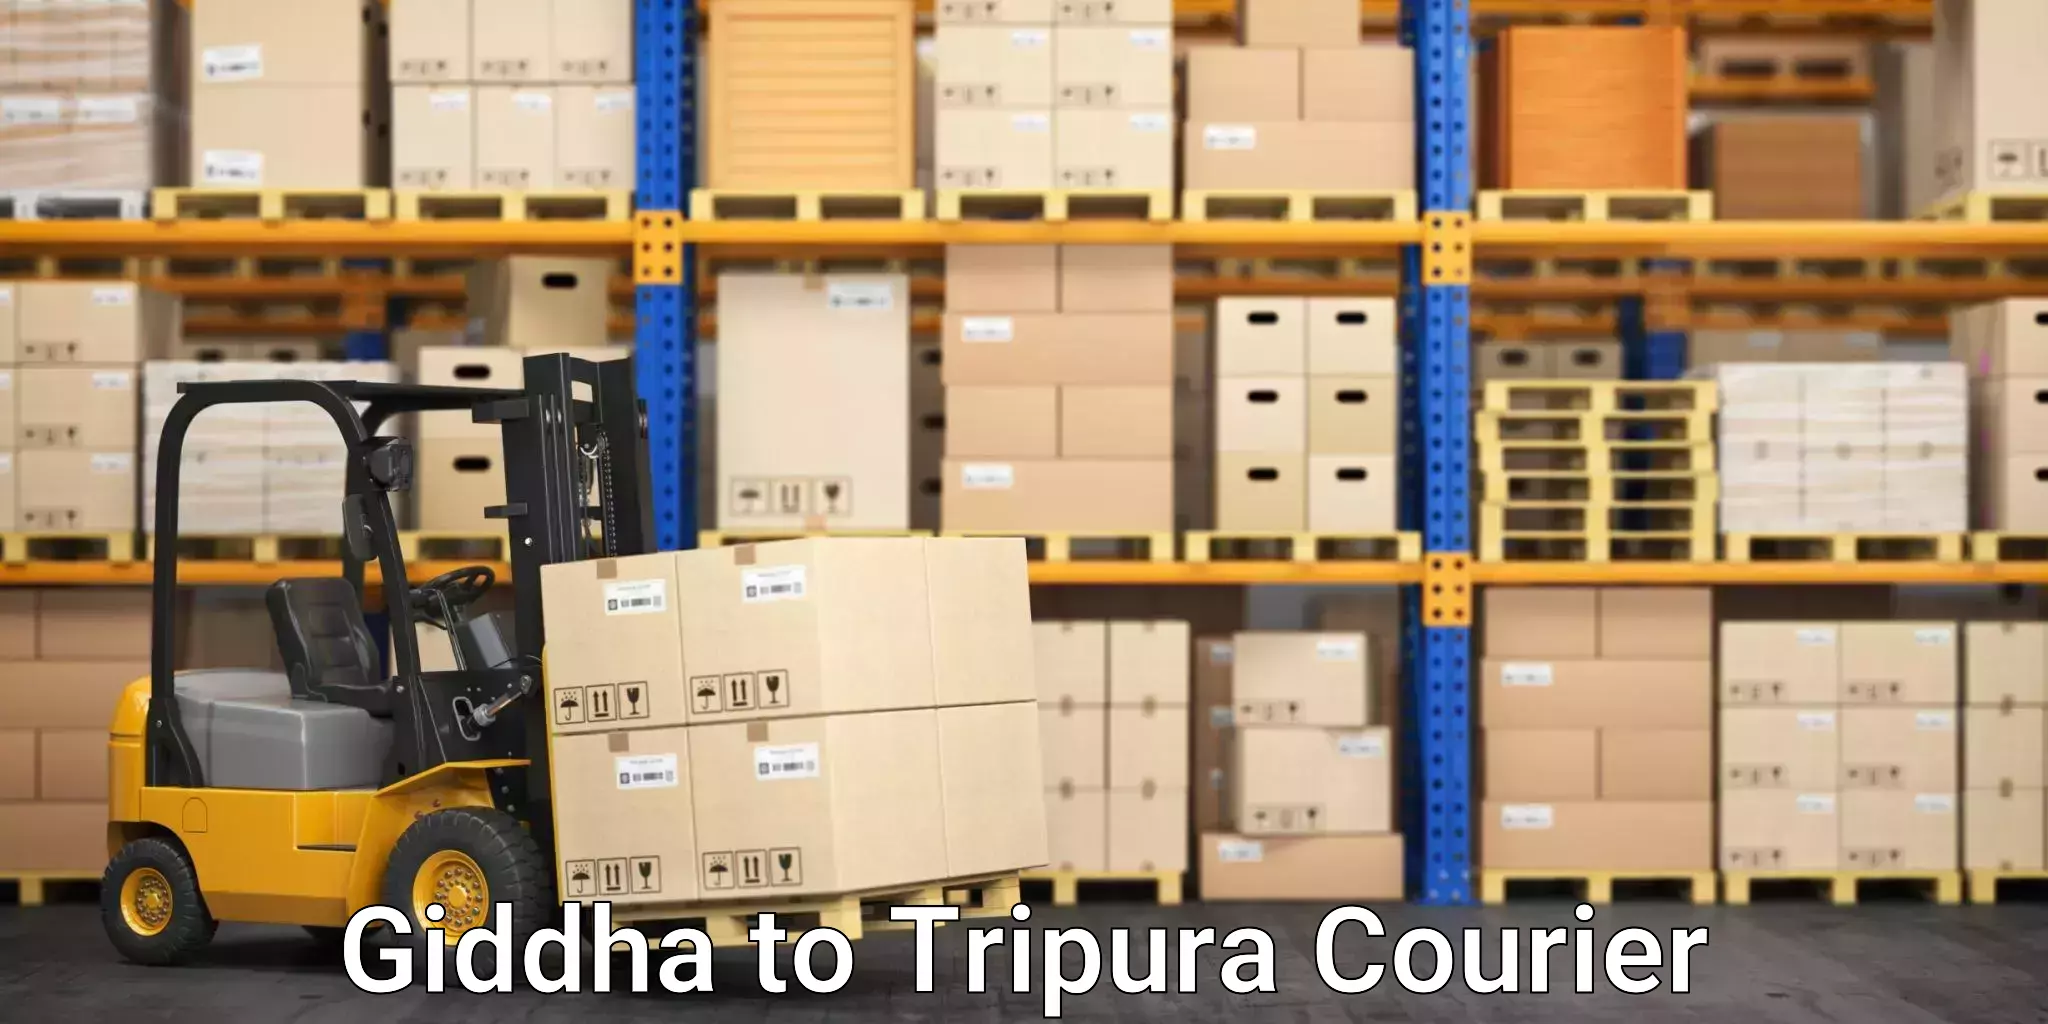 Budget-friendly movers Giddha to IIIT Agartala